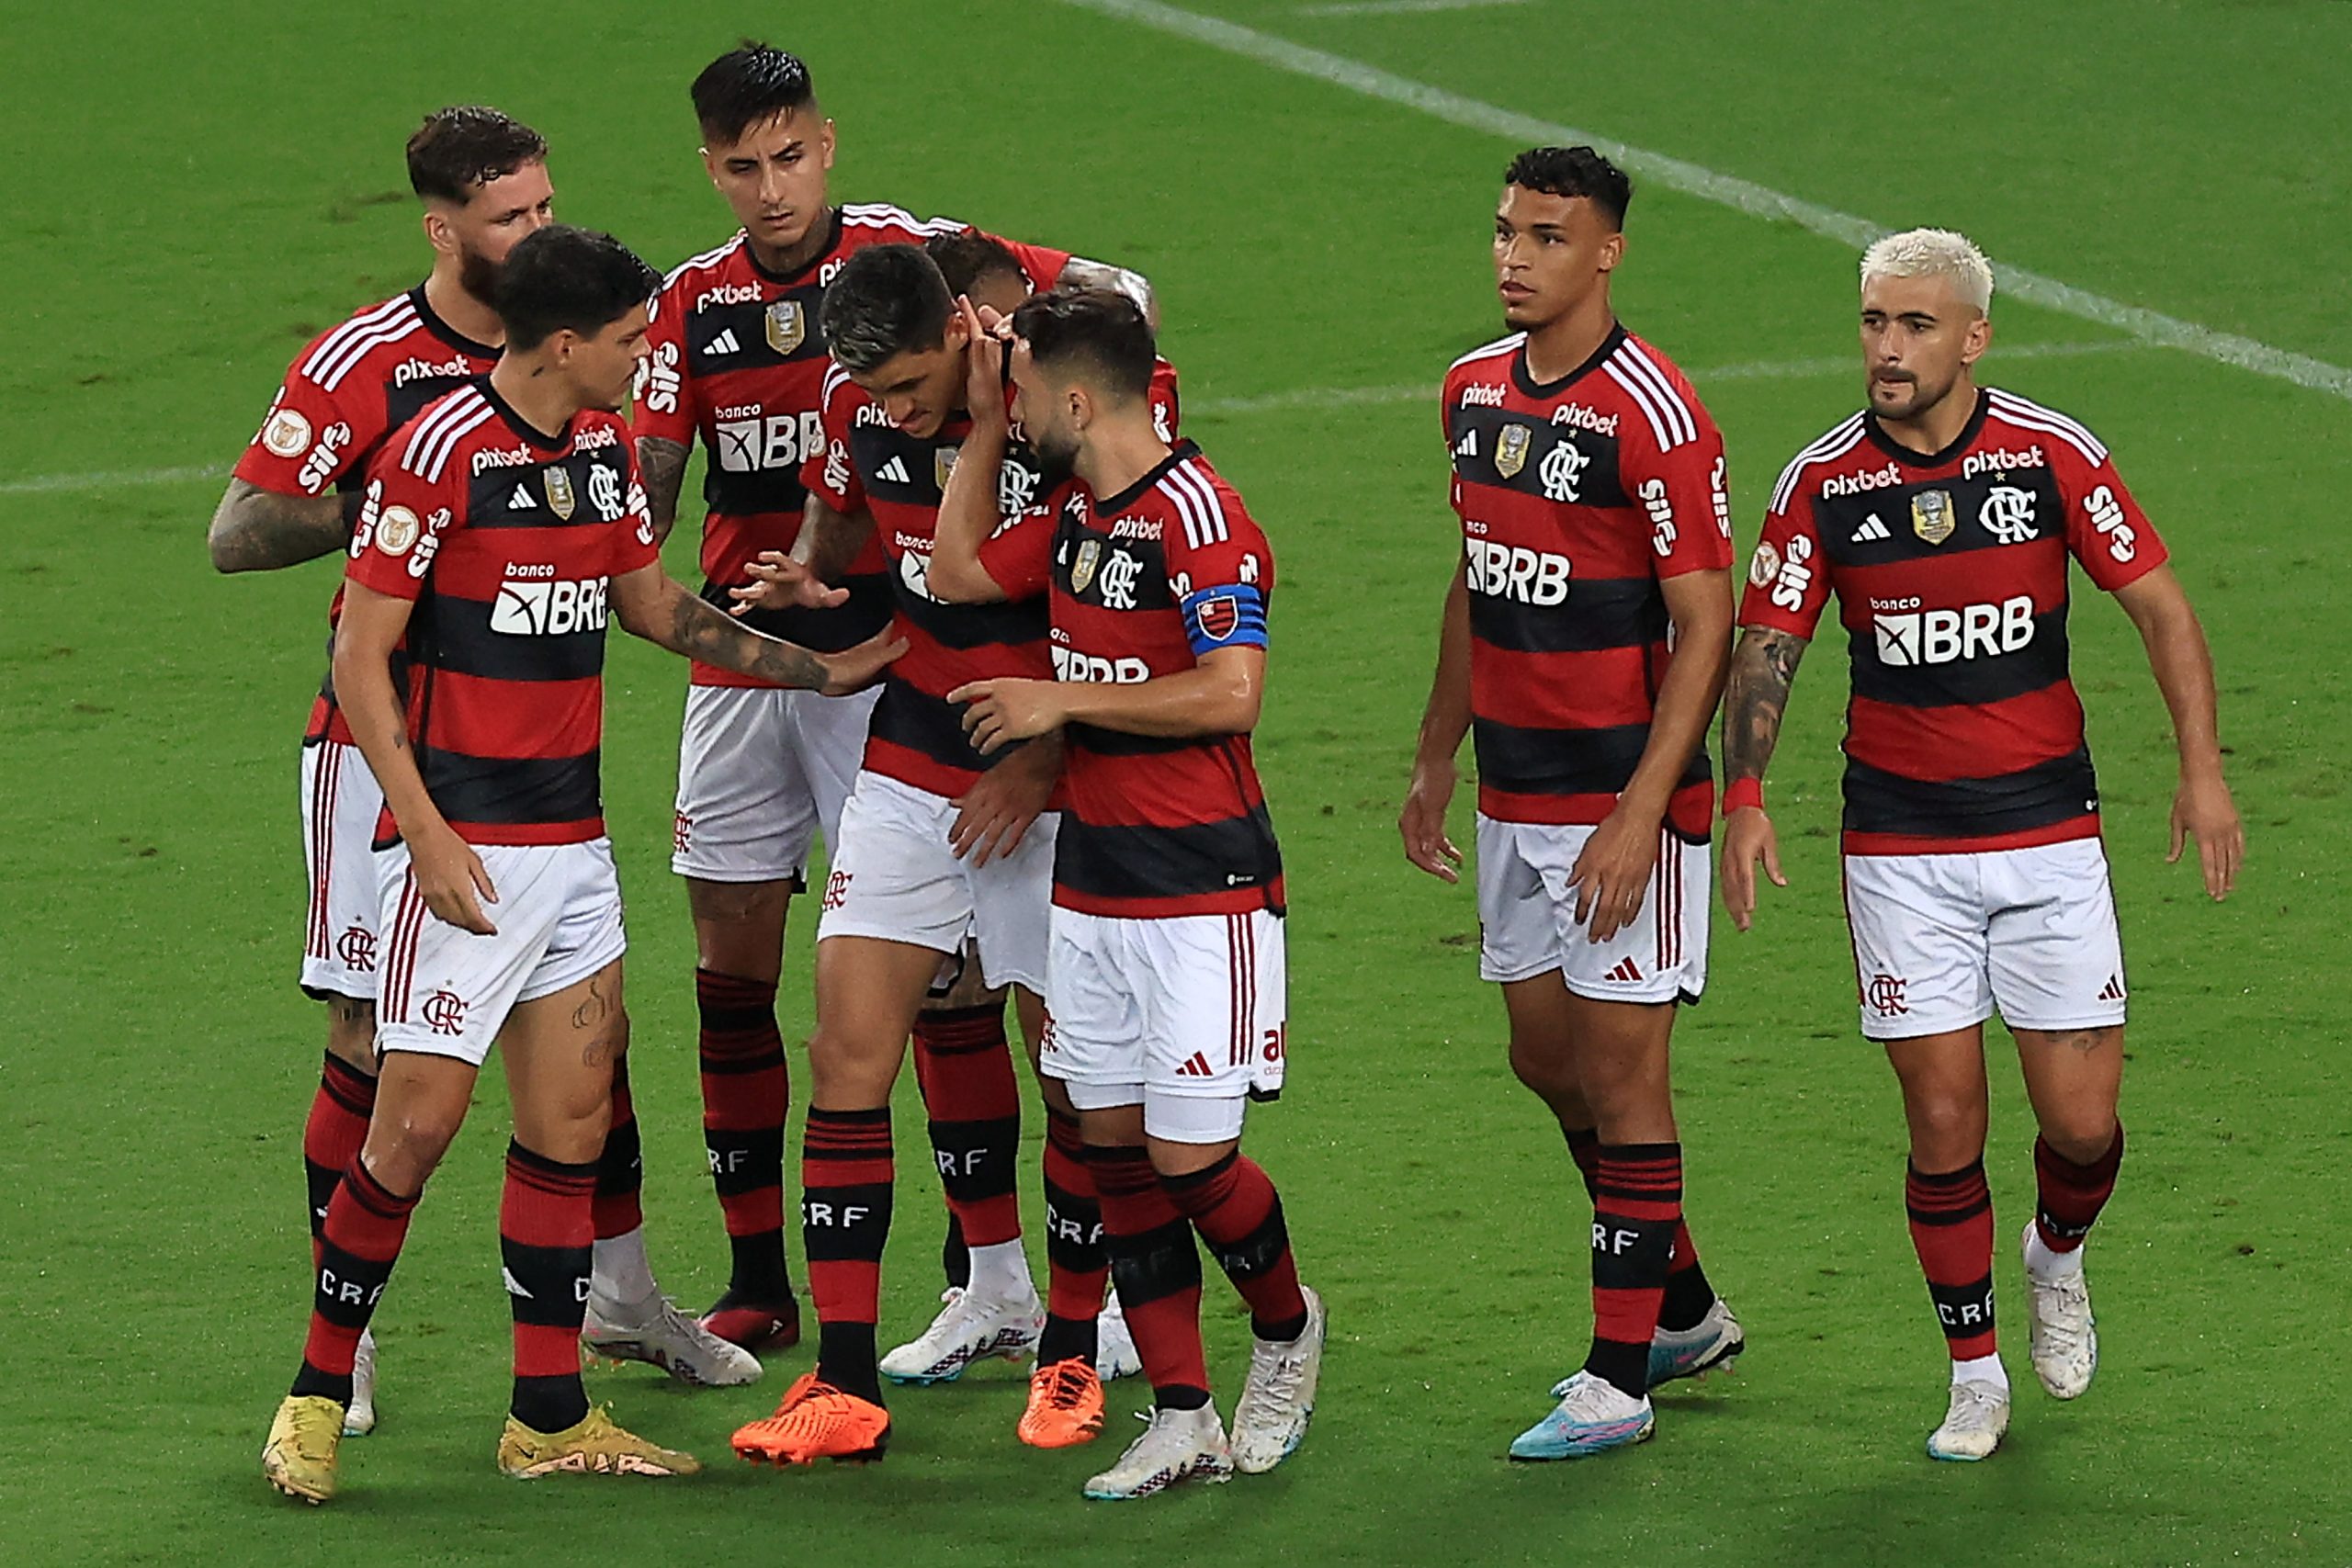 Flamengo vence o Goiás no Maracanã e encerra sequência de três derrotas no Brasileirão